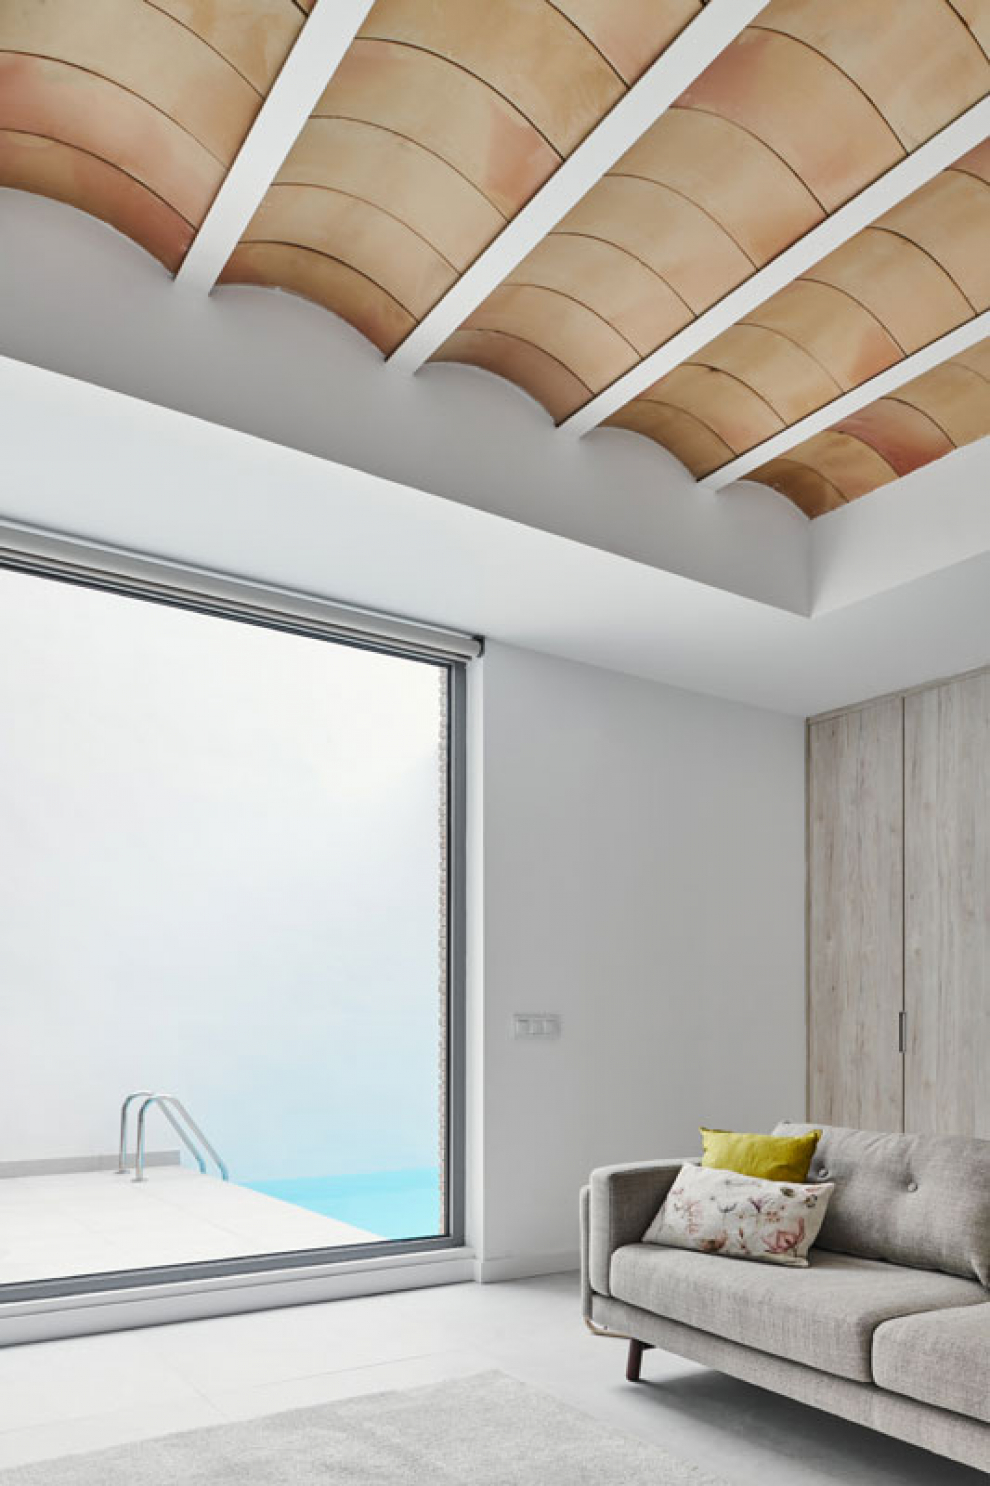 La vivienda, de DANA Arquitectos, consiguió el accésit al mejor edificio residencial de Aragón en 2020 en los Premios García Mercadal